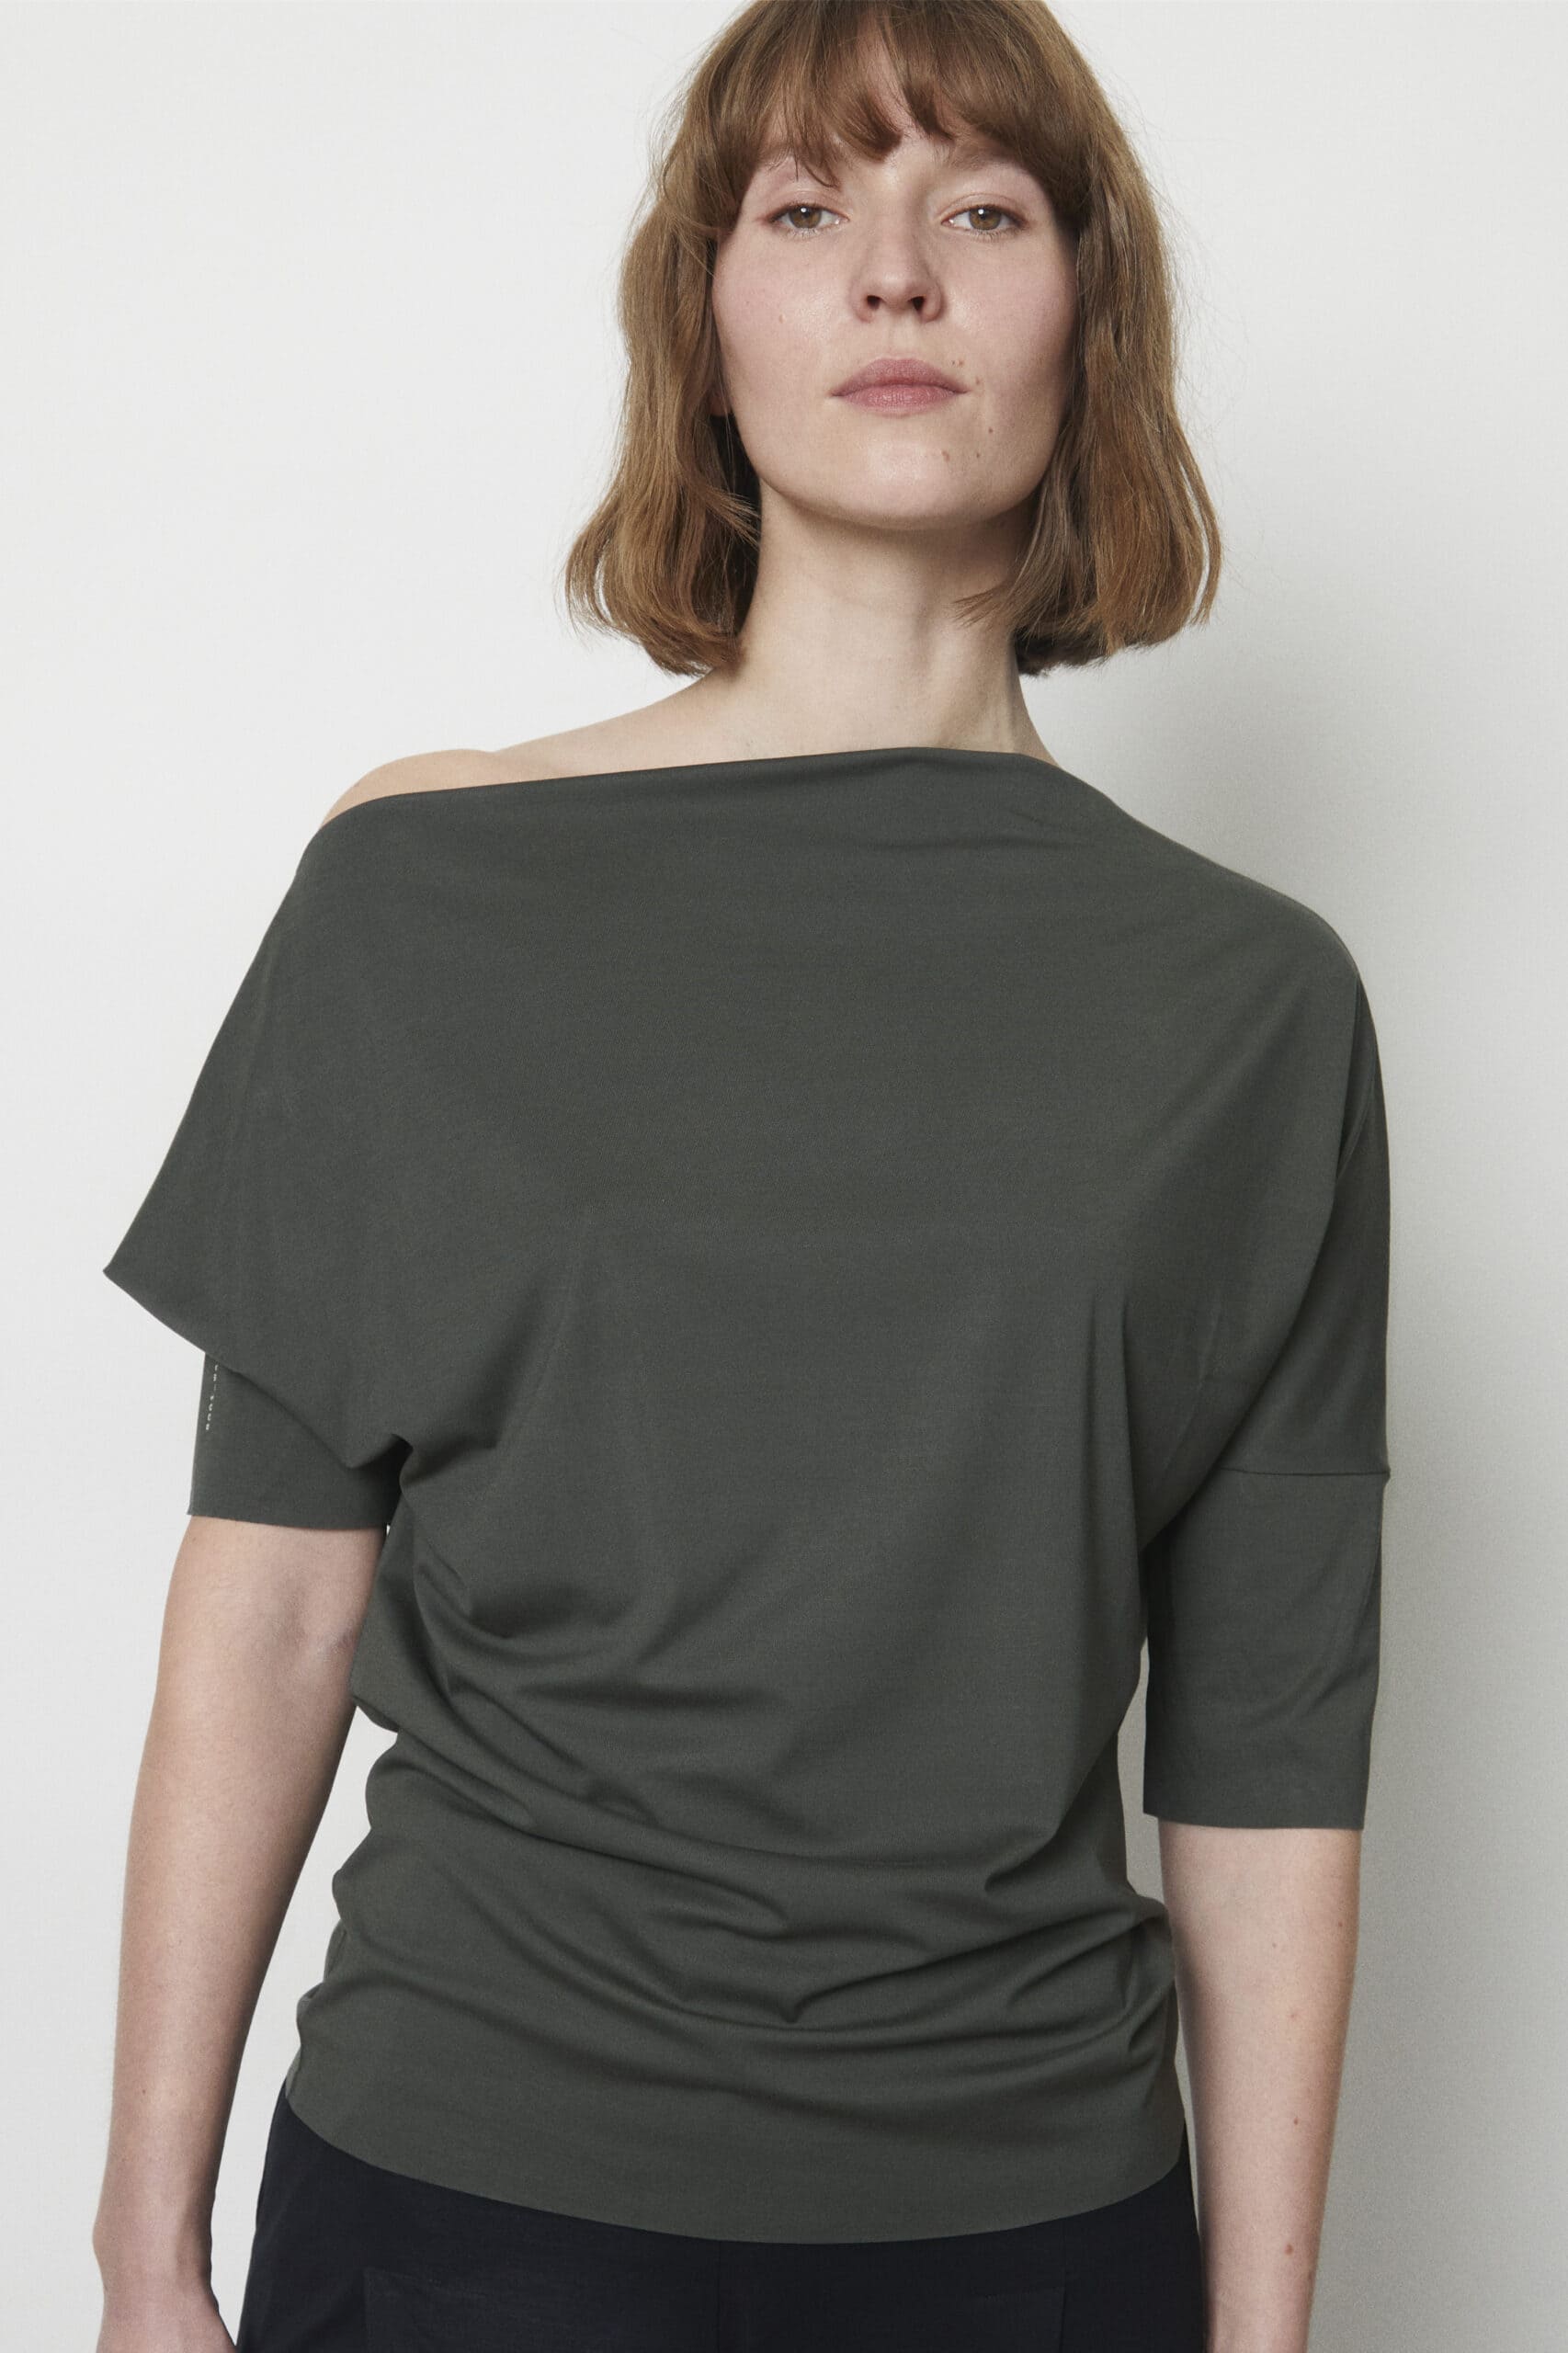 Deep White Black Modell LEXI Batsleeve T-Shirt Olive, Schulter frei, Ansicht von vorne